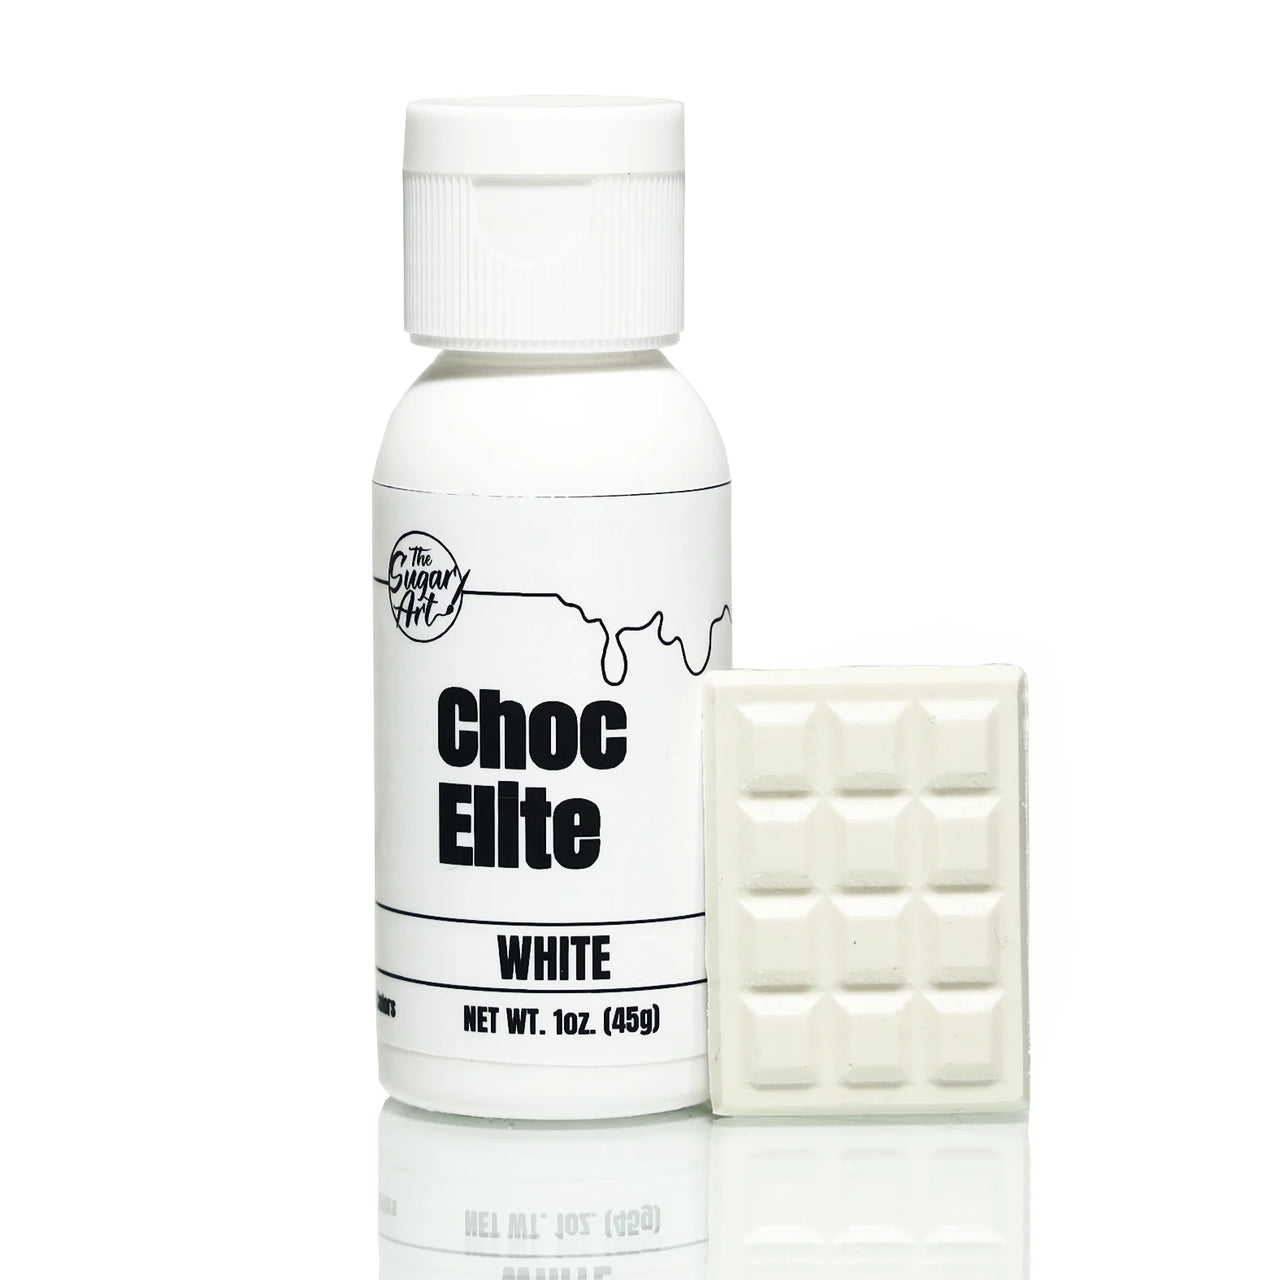 White Choc Elite 1oz (45g)